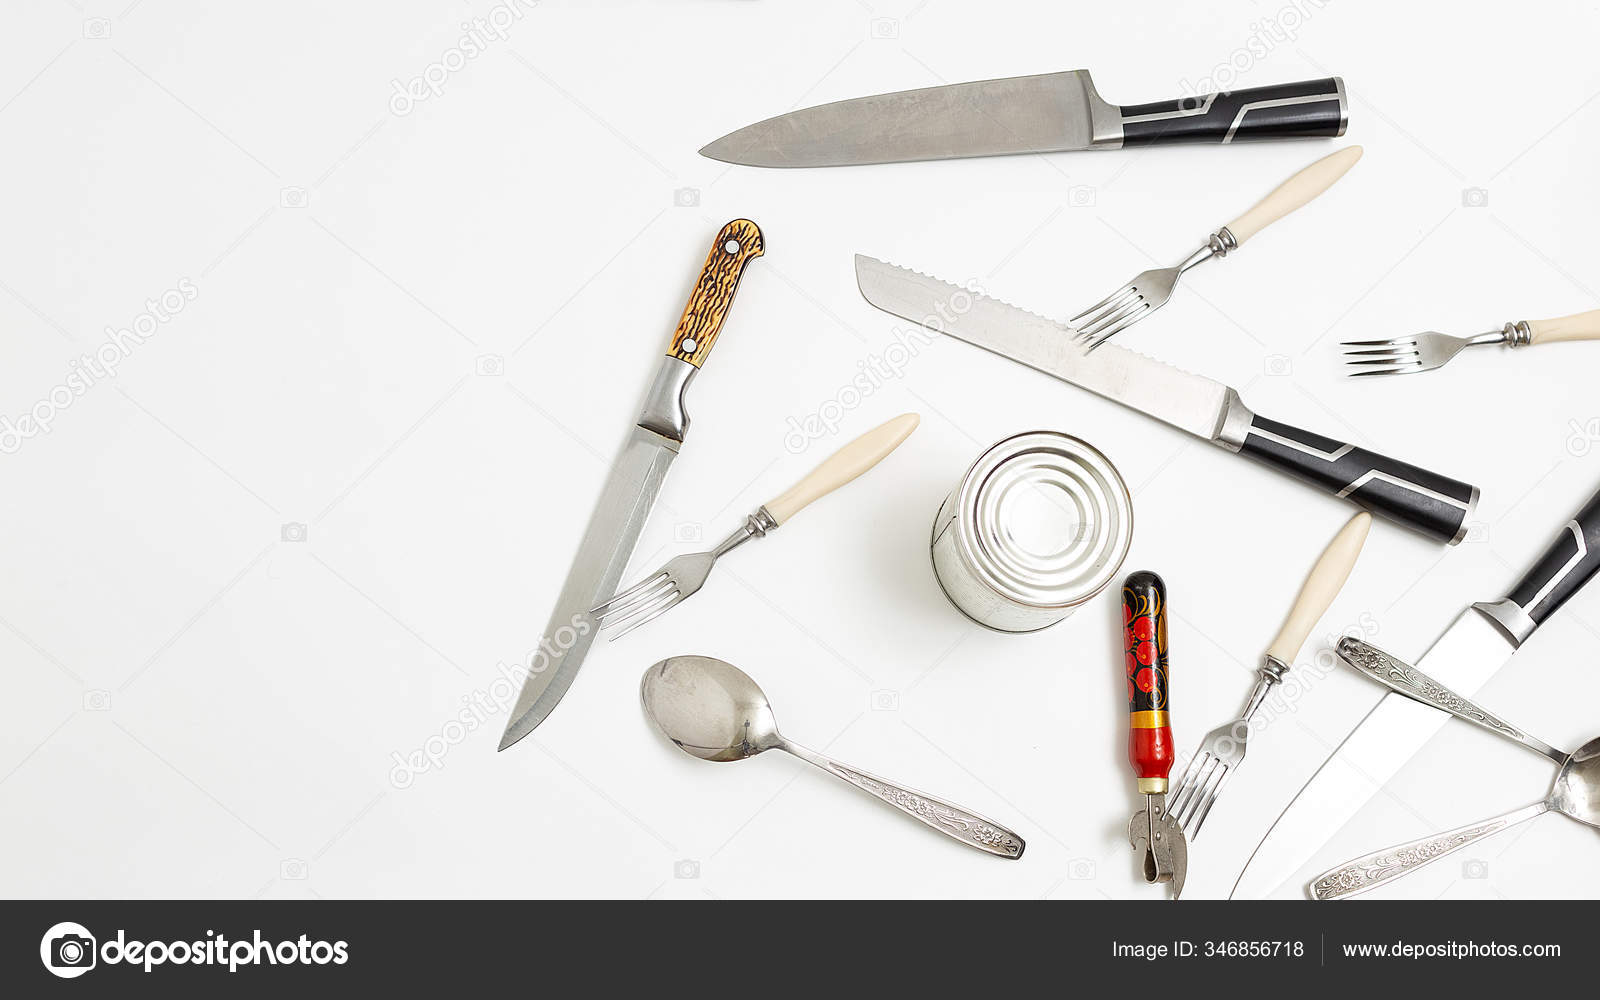 https://st3.depositphotos.com/26629778/34685/i/1600/depositphotos_346856718-stock-photo-kitchen-utensils-opener-forks-sharp.jpg